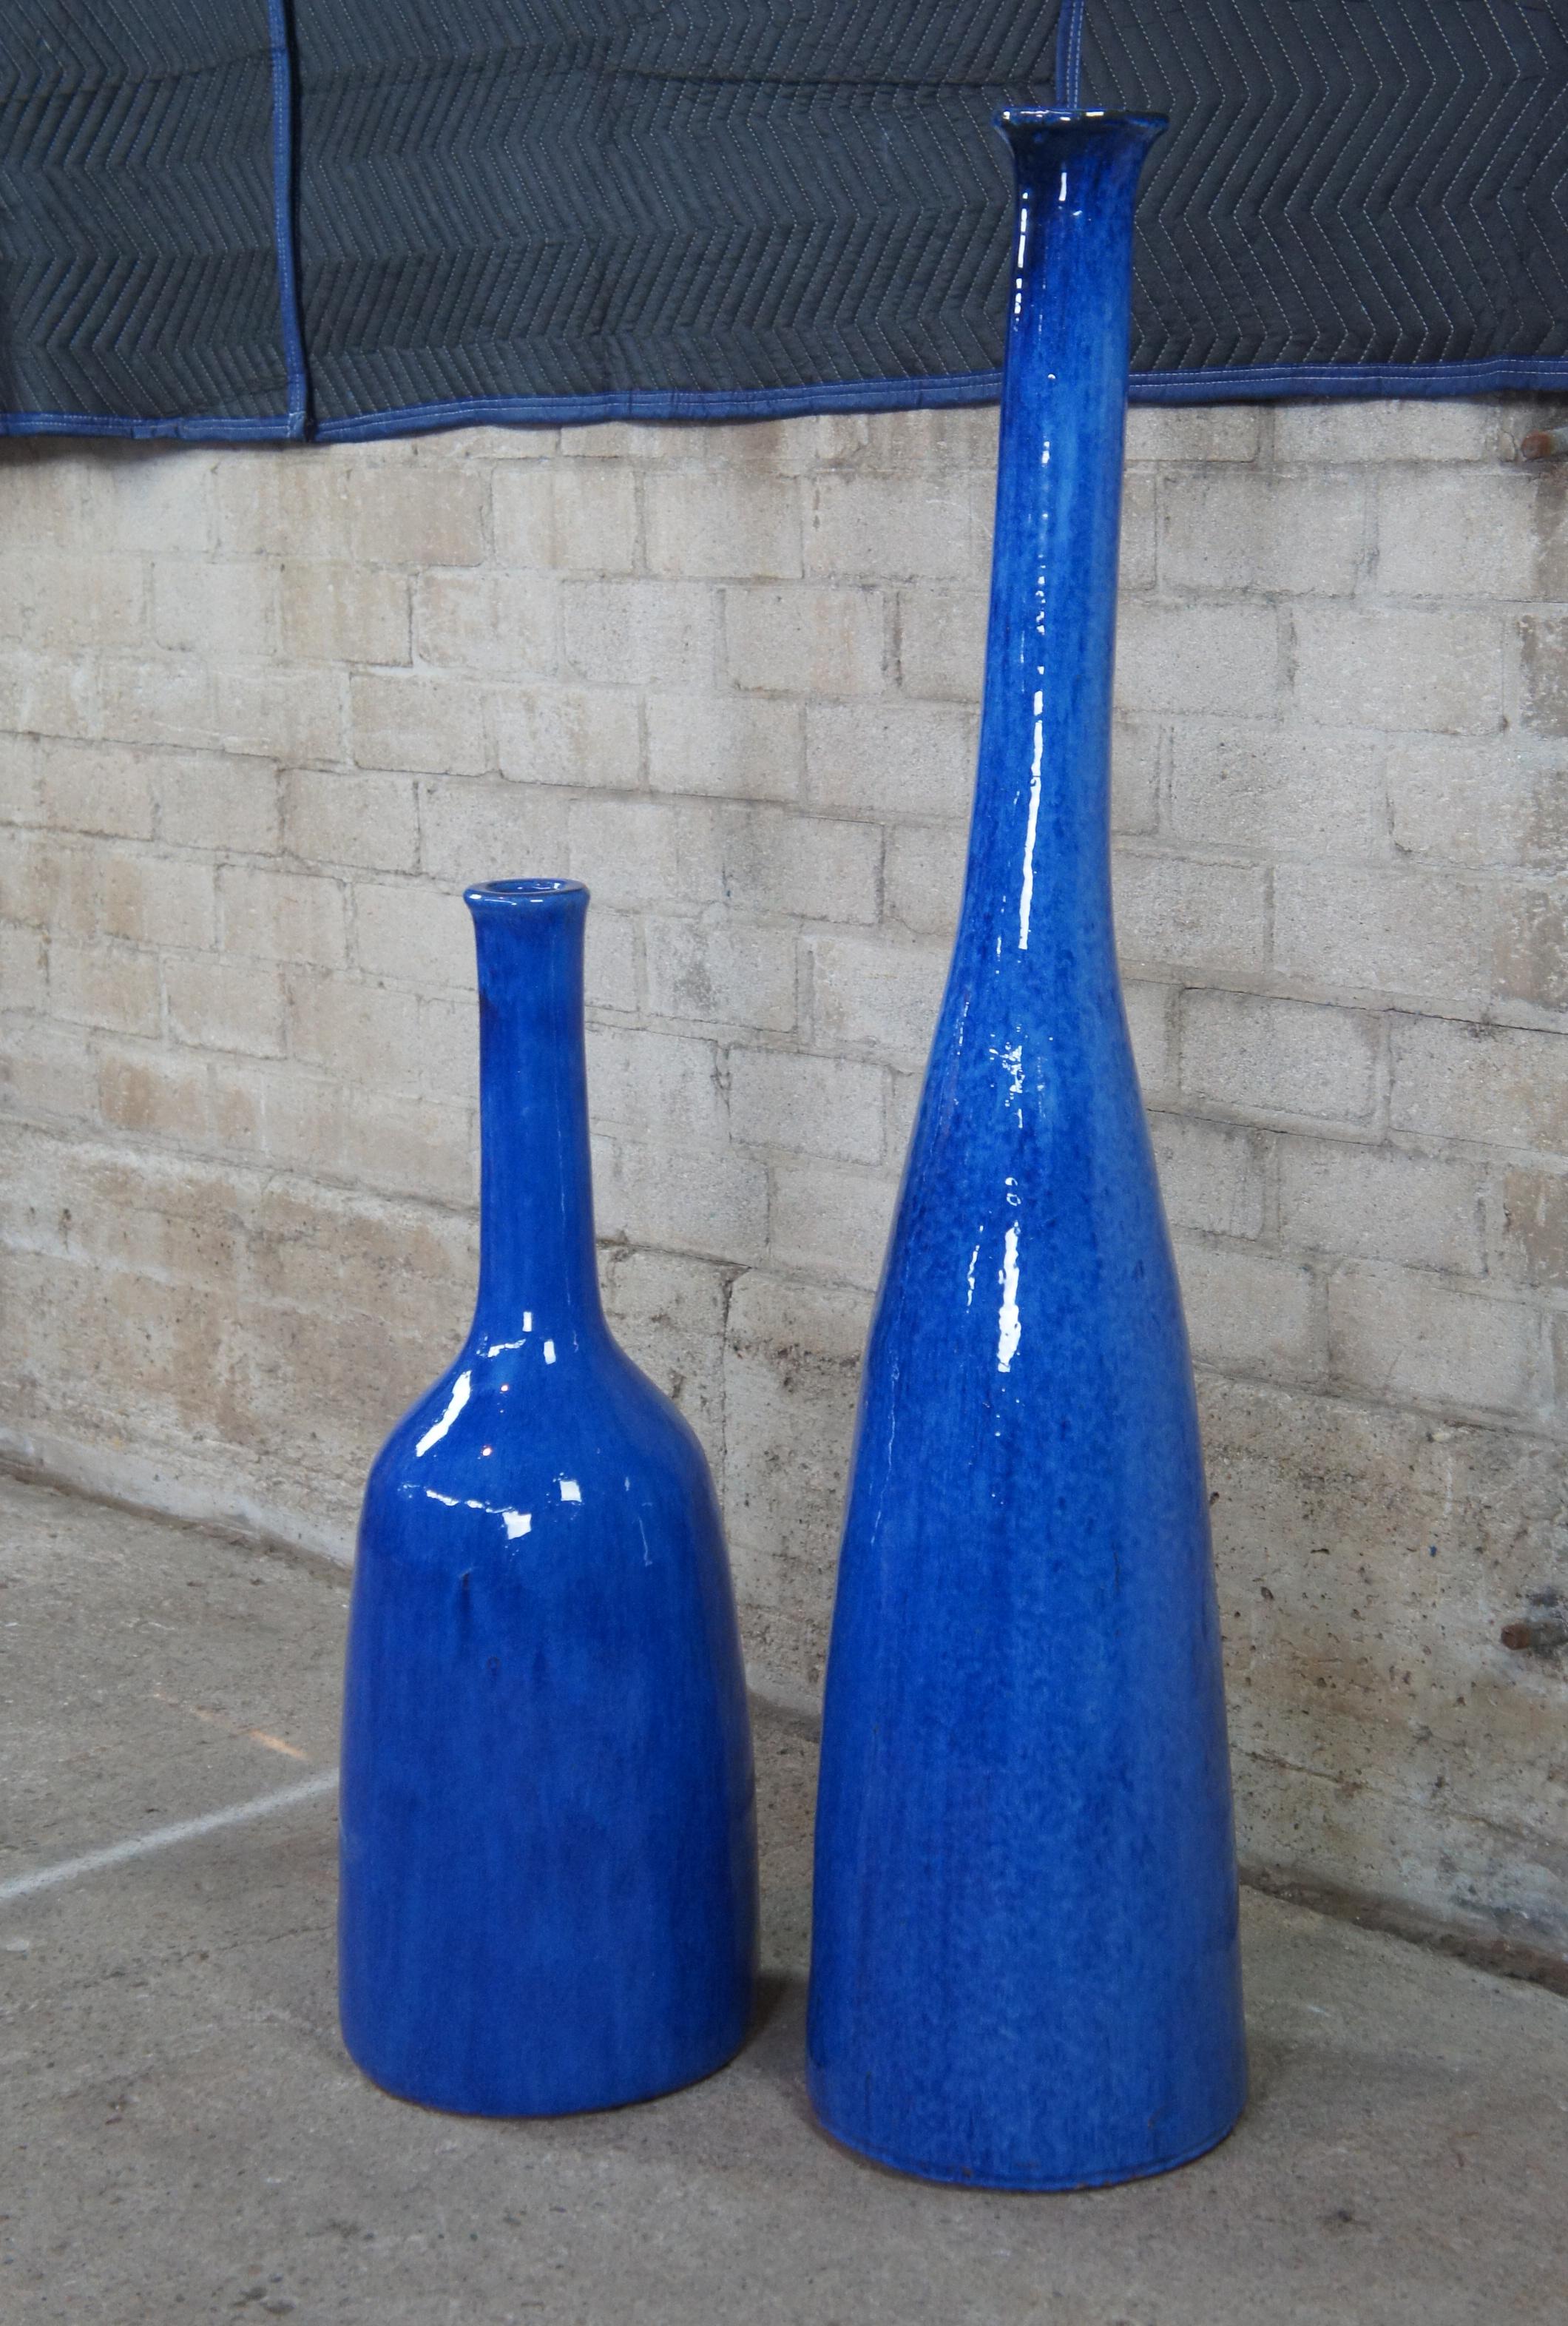 2 Paola Navone Gervasoni 1882 Inout 91 & 92 Ceramic Cobalt Blue Floor Vases 1